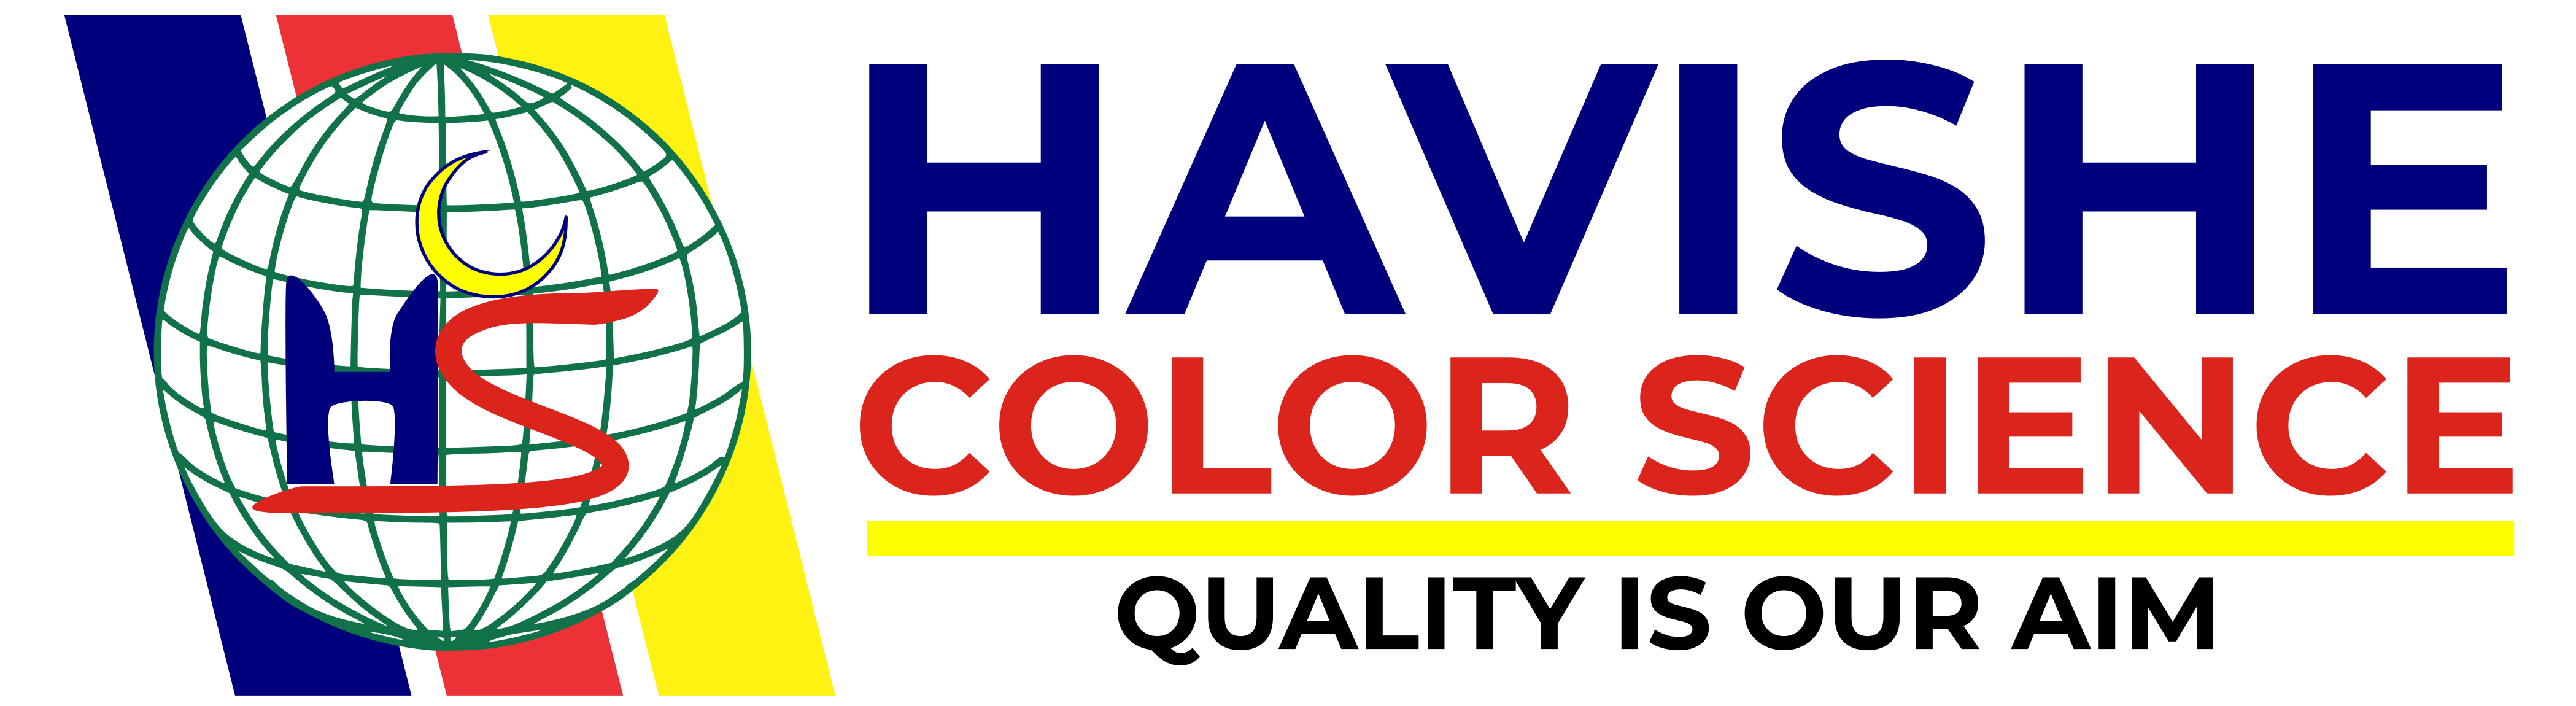 Havishe Color Science